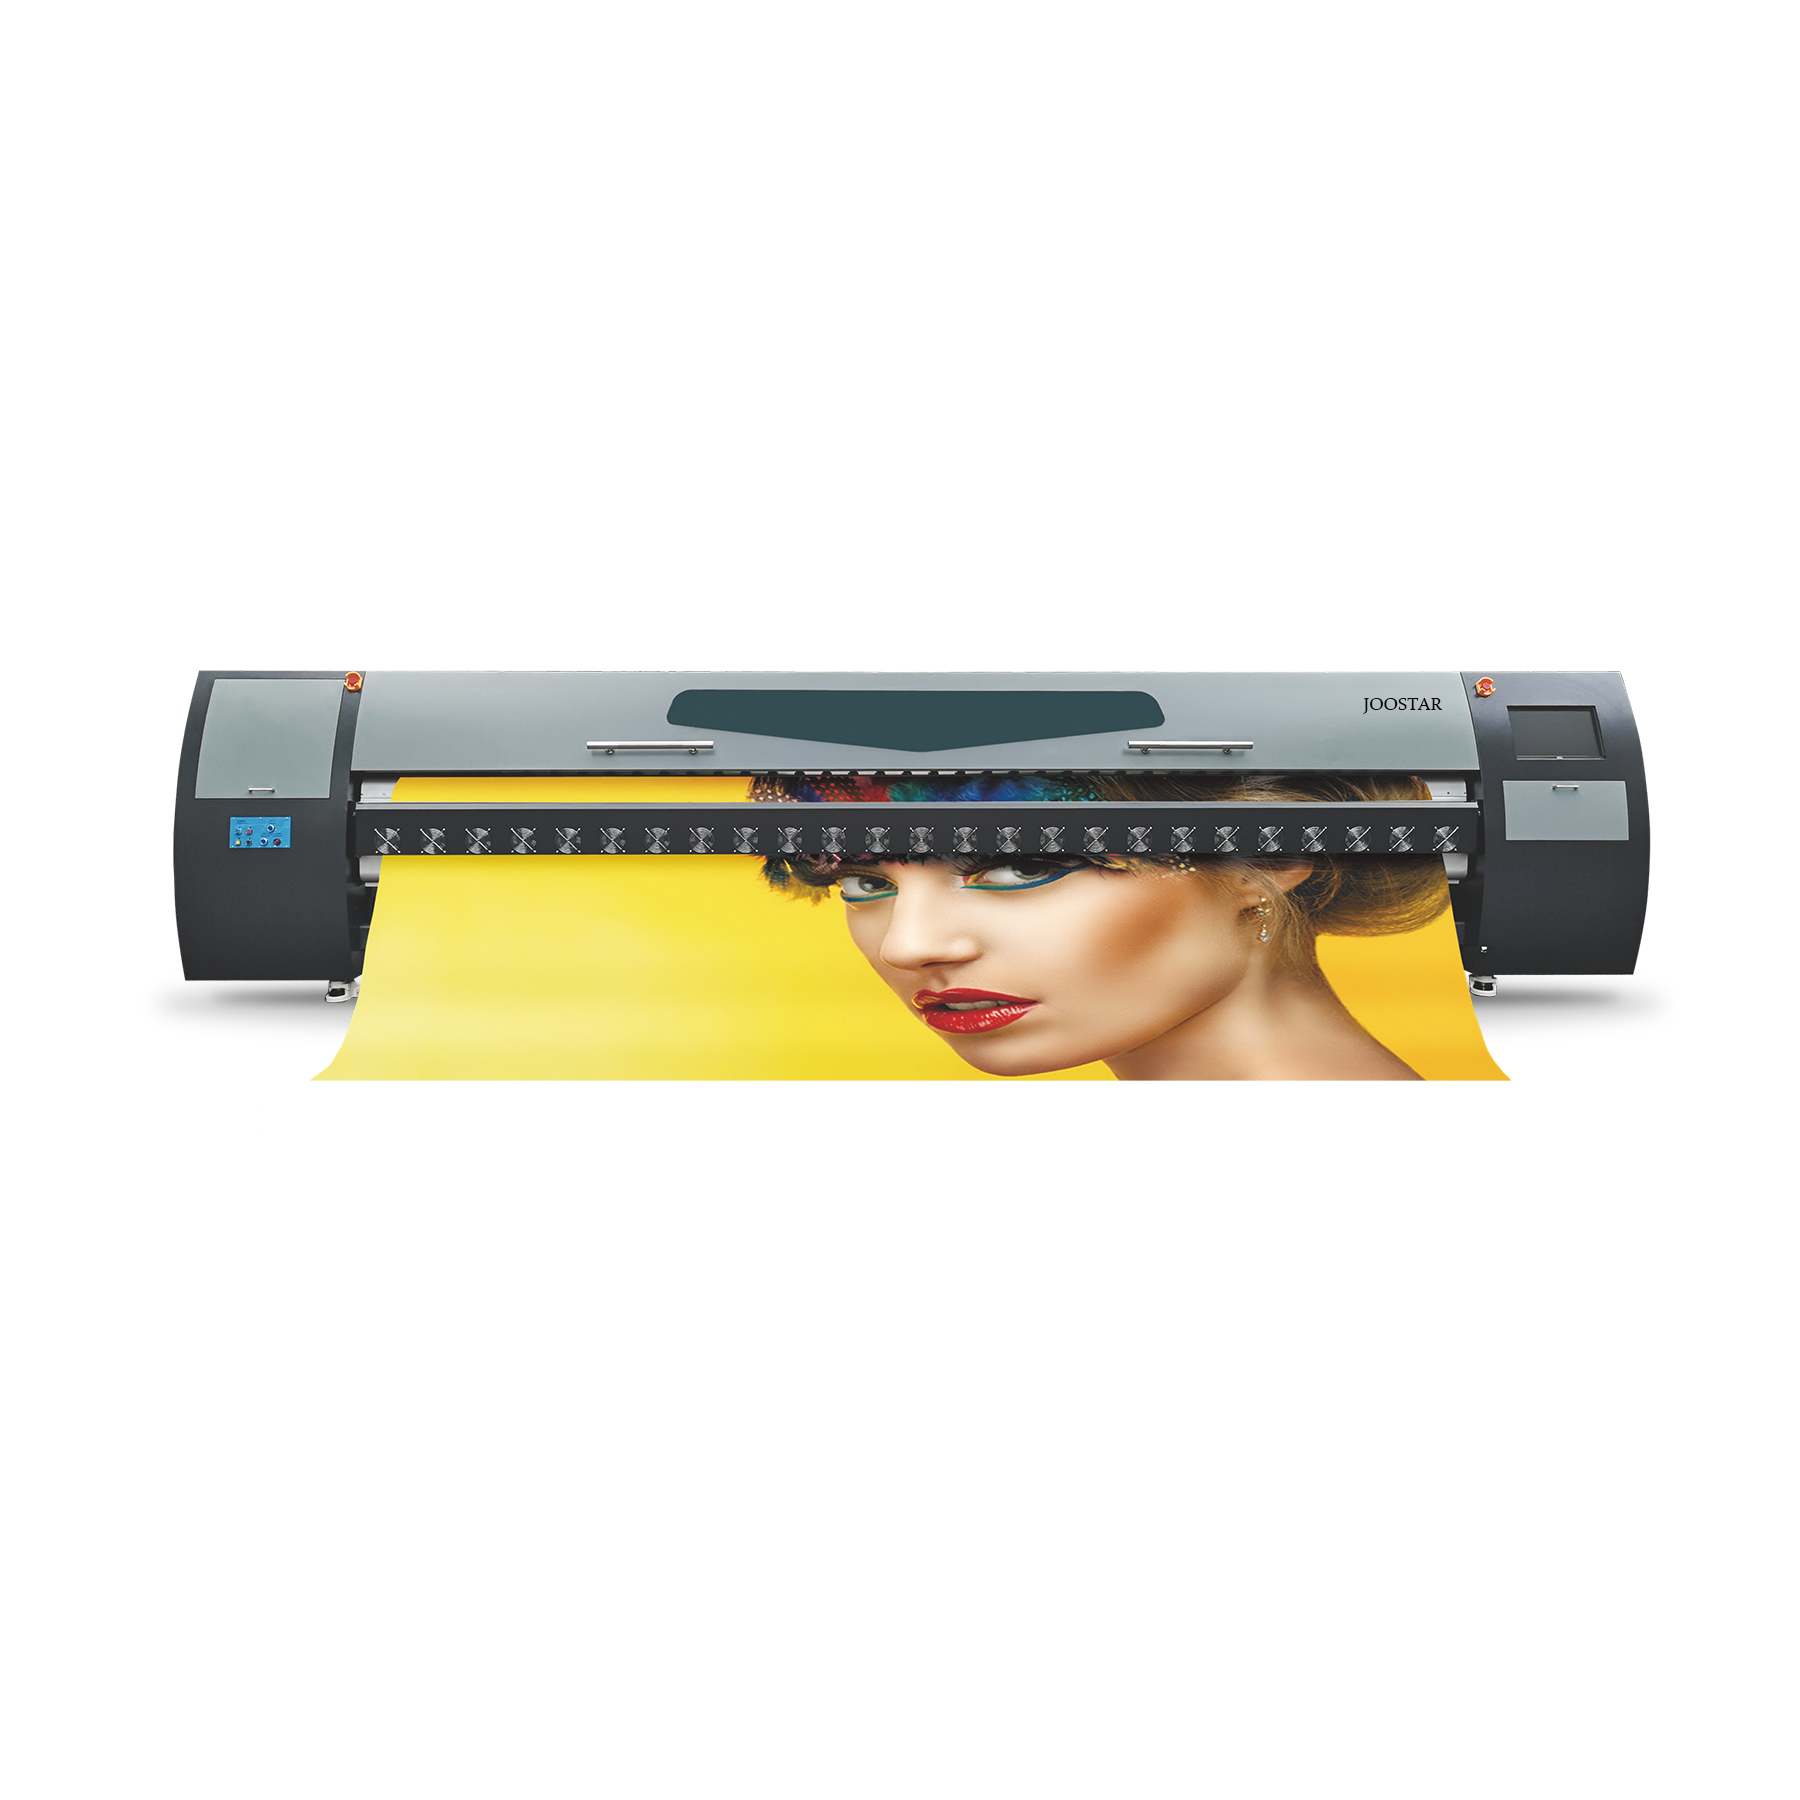 E5200 Giant Inkjet Printer